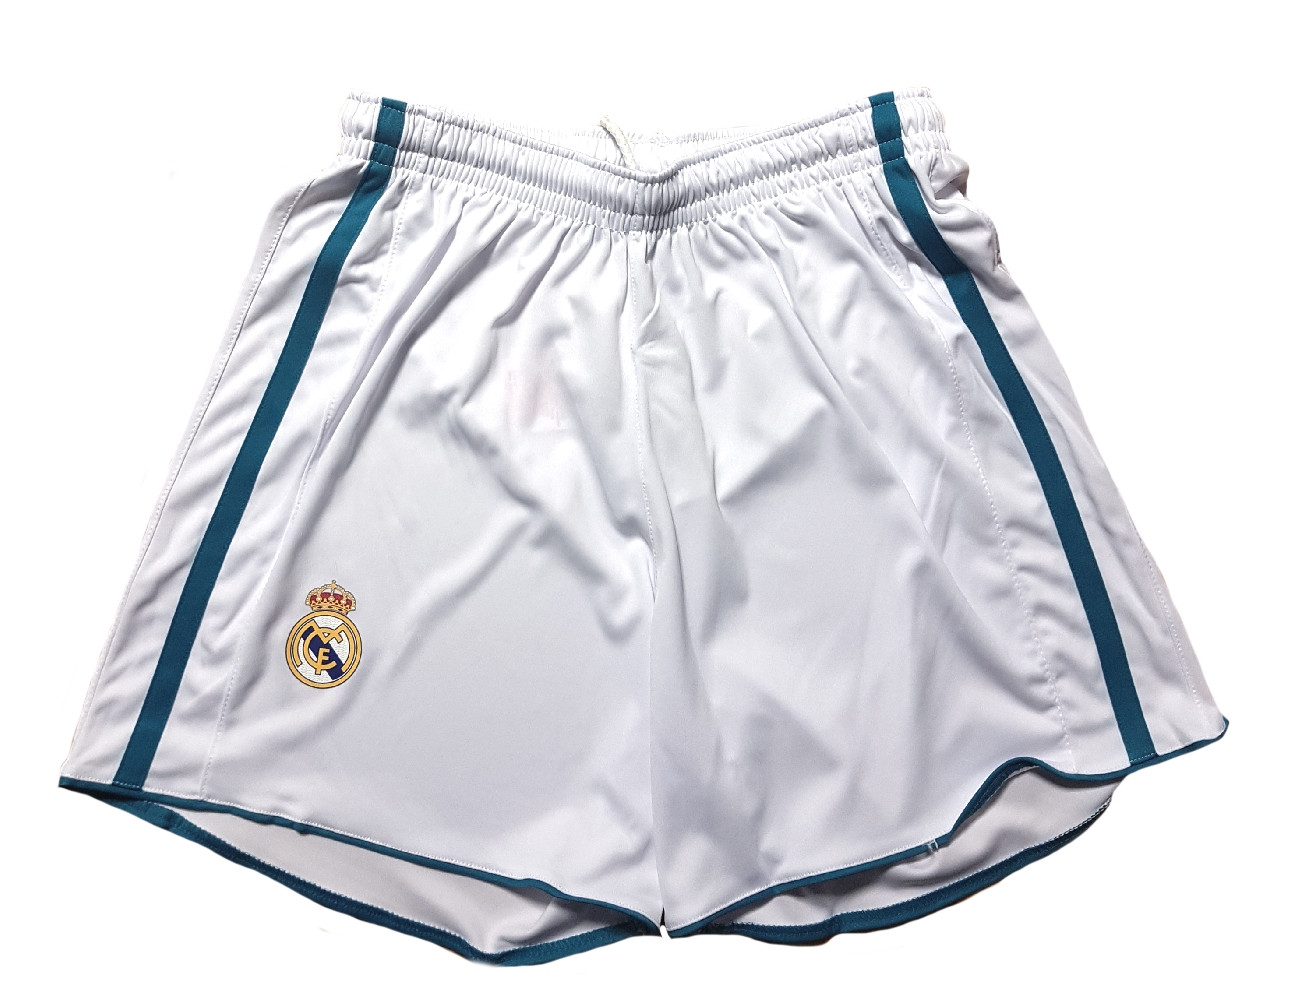 Pantaloncini Real Madrid Adulto Replica Ufficiale Autorizzata PS 25947 Pelusciamo Store Marchirolo